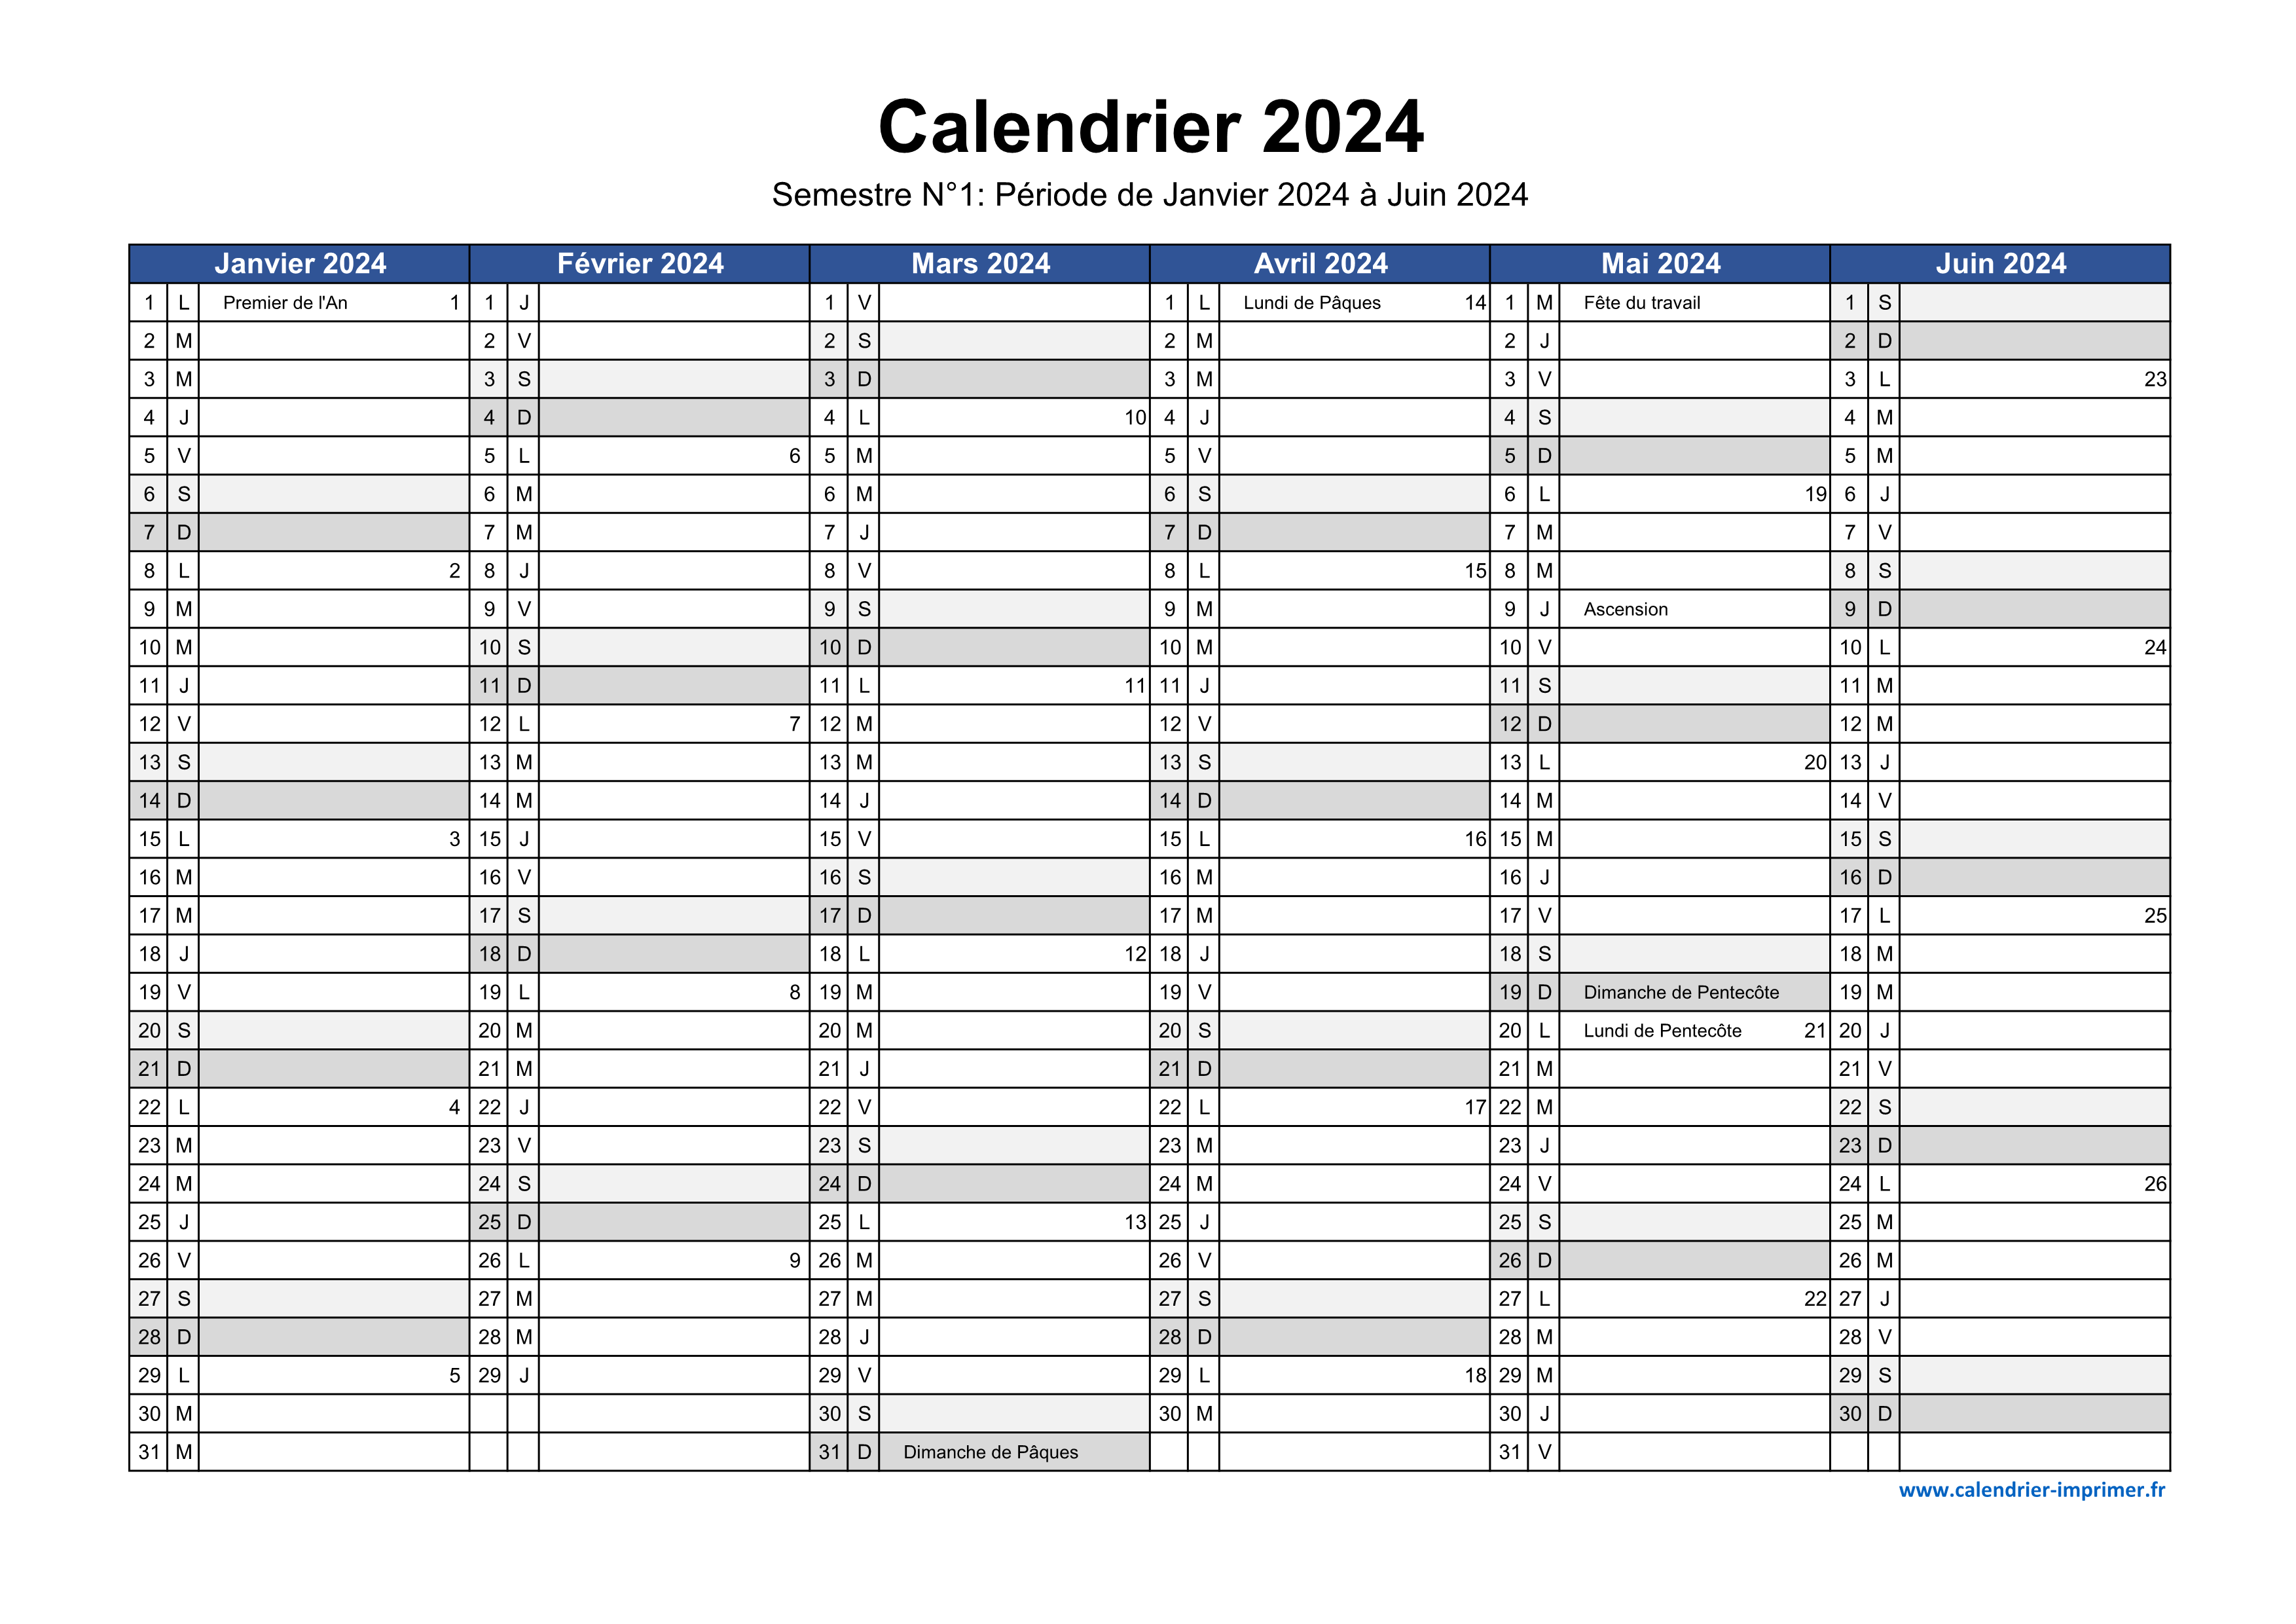 Calendrier semestriel 2024 à imprimer pour le 1er et le 2ème